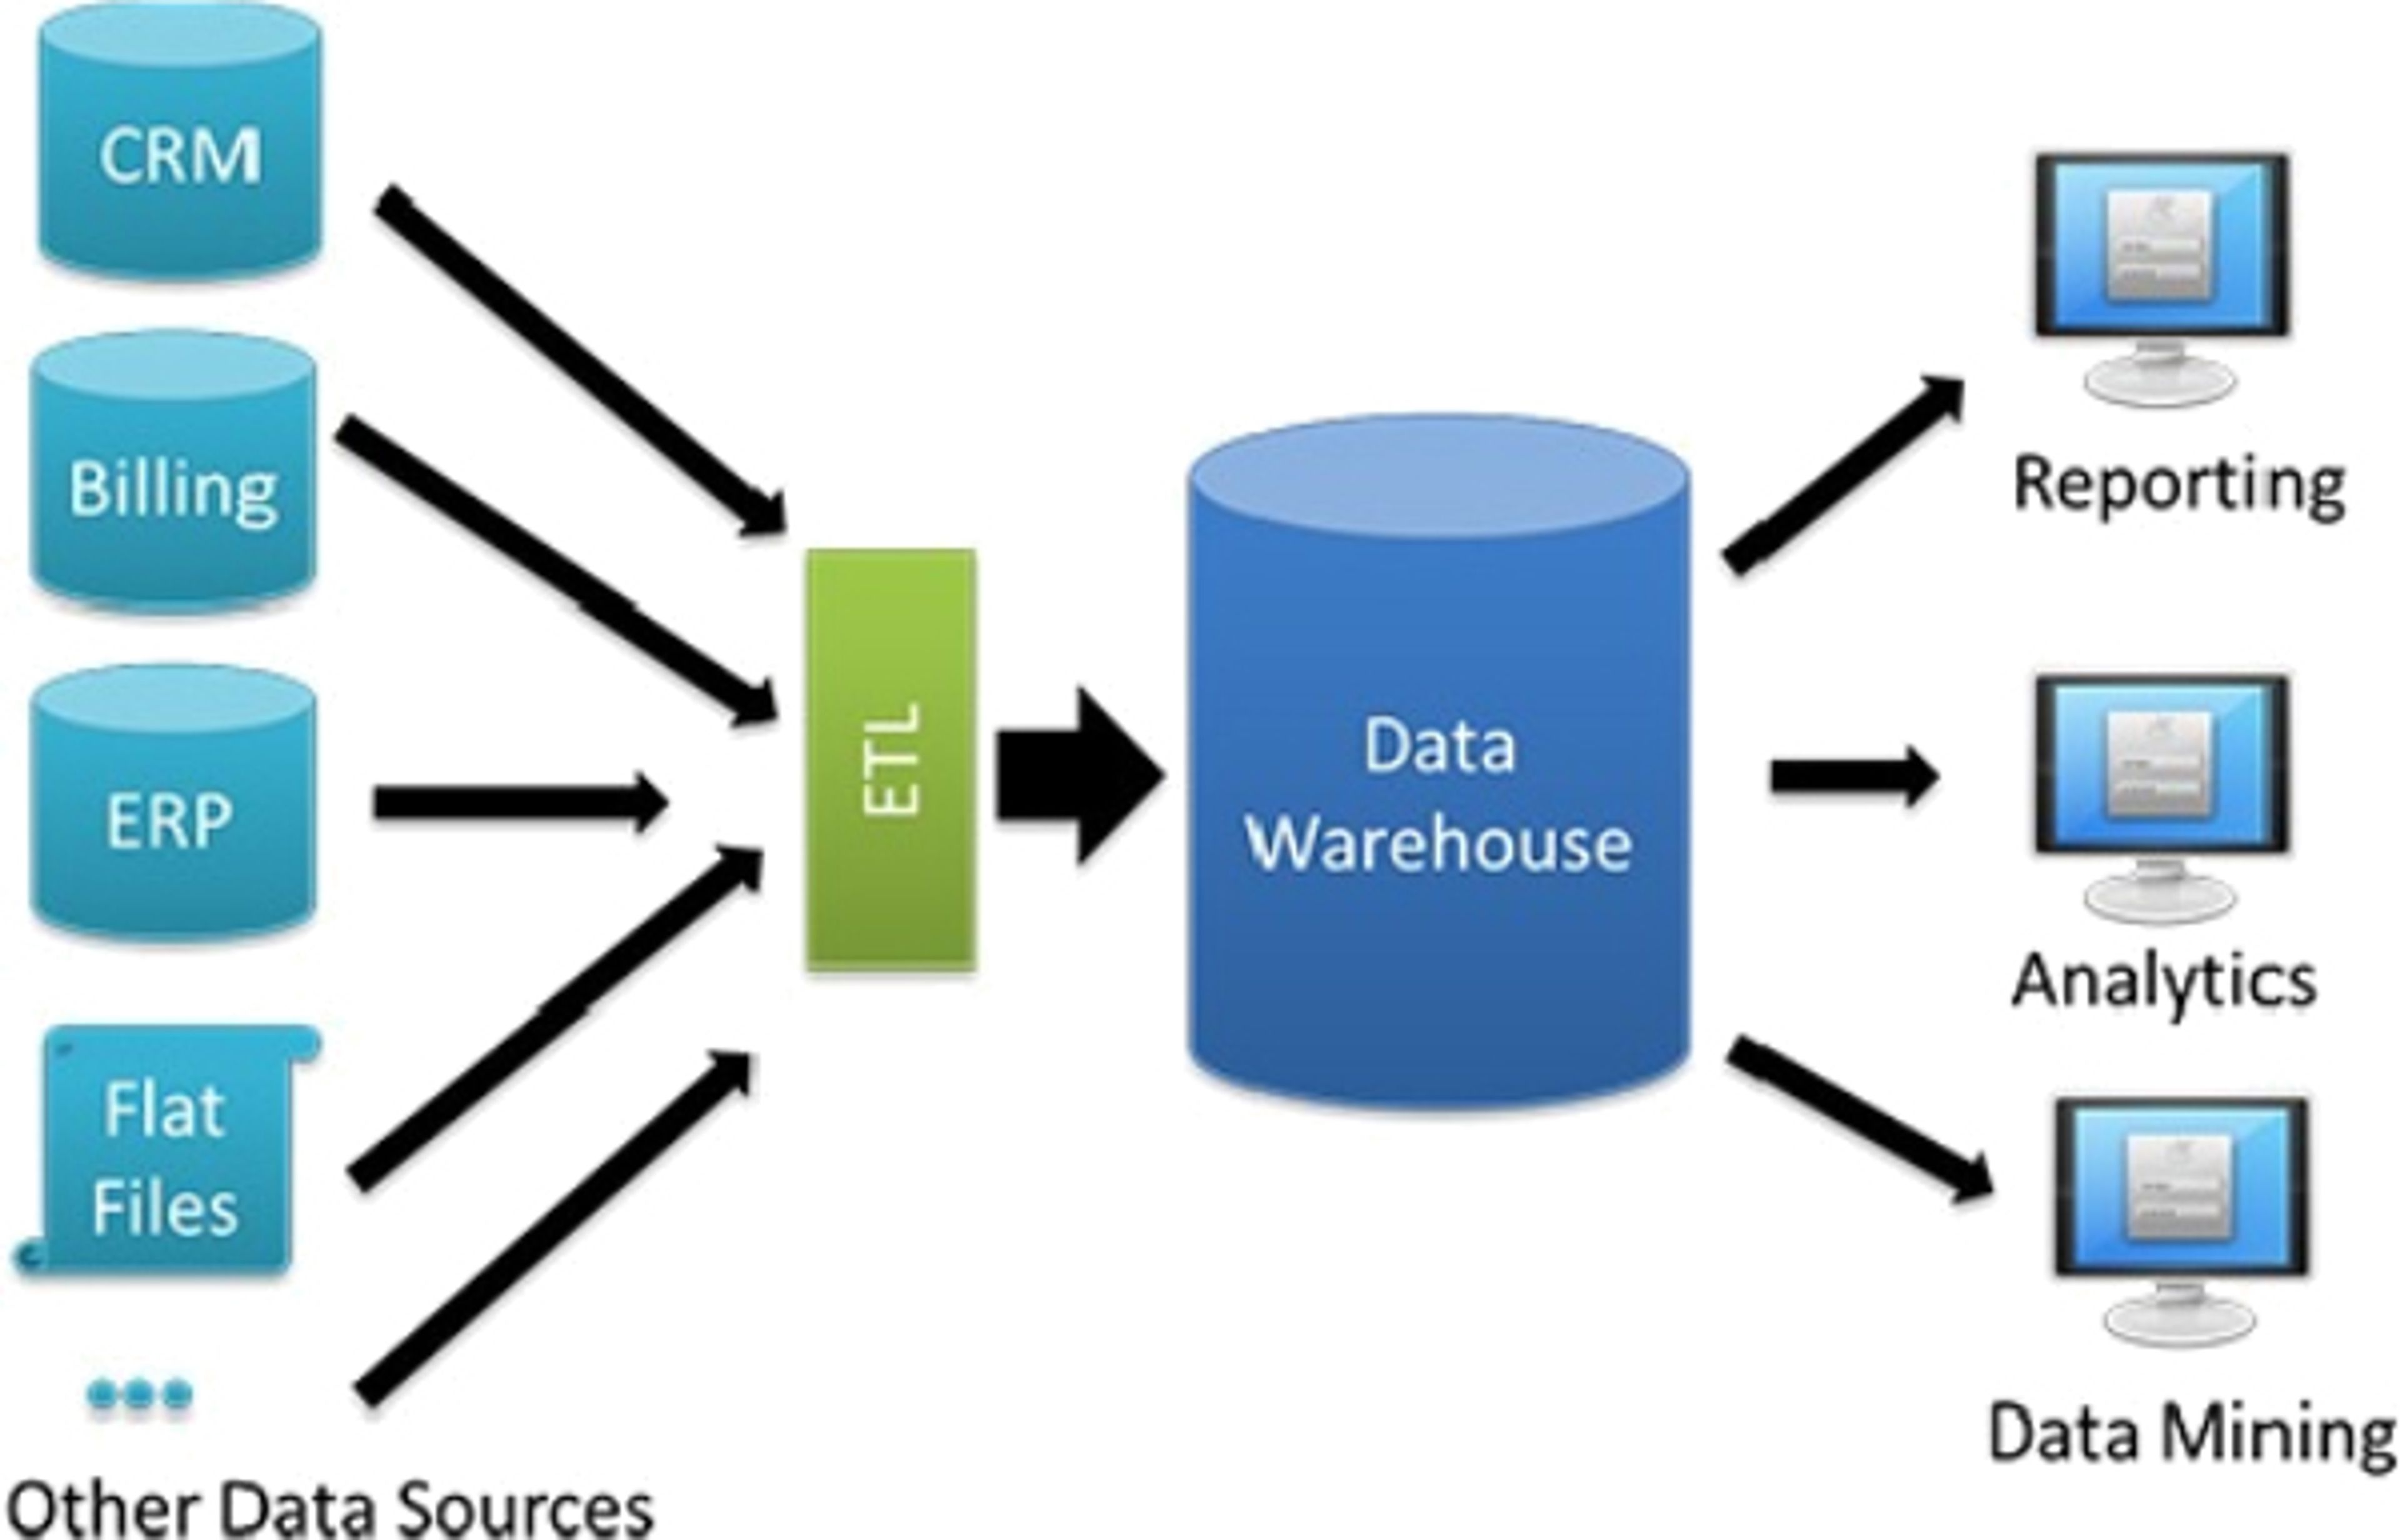 Un Data Warehouse va recueillir l'ensemble des données de l'entreprise après un traitement préalable par un ETL